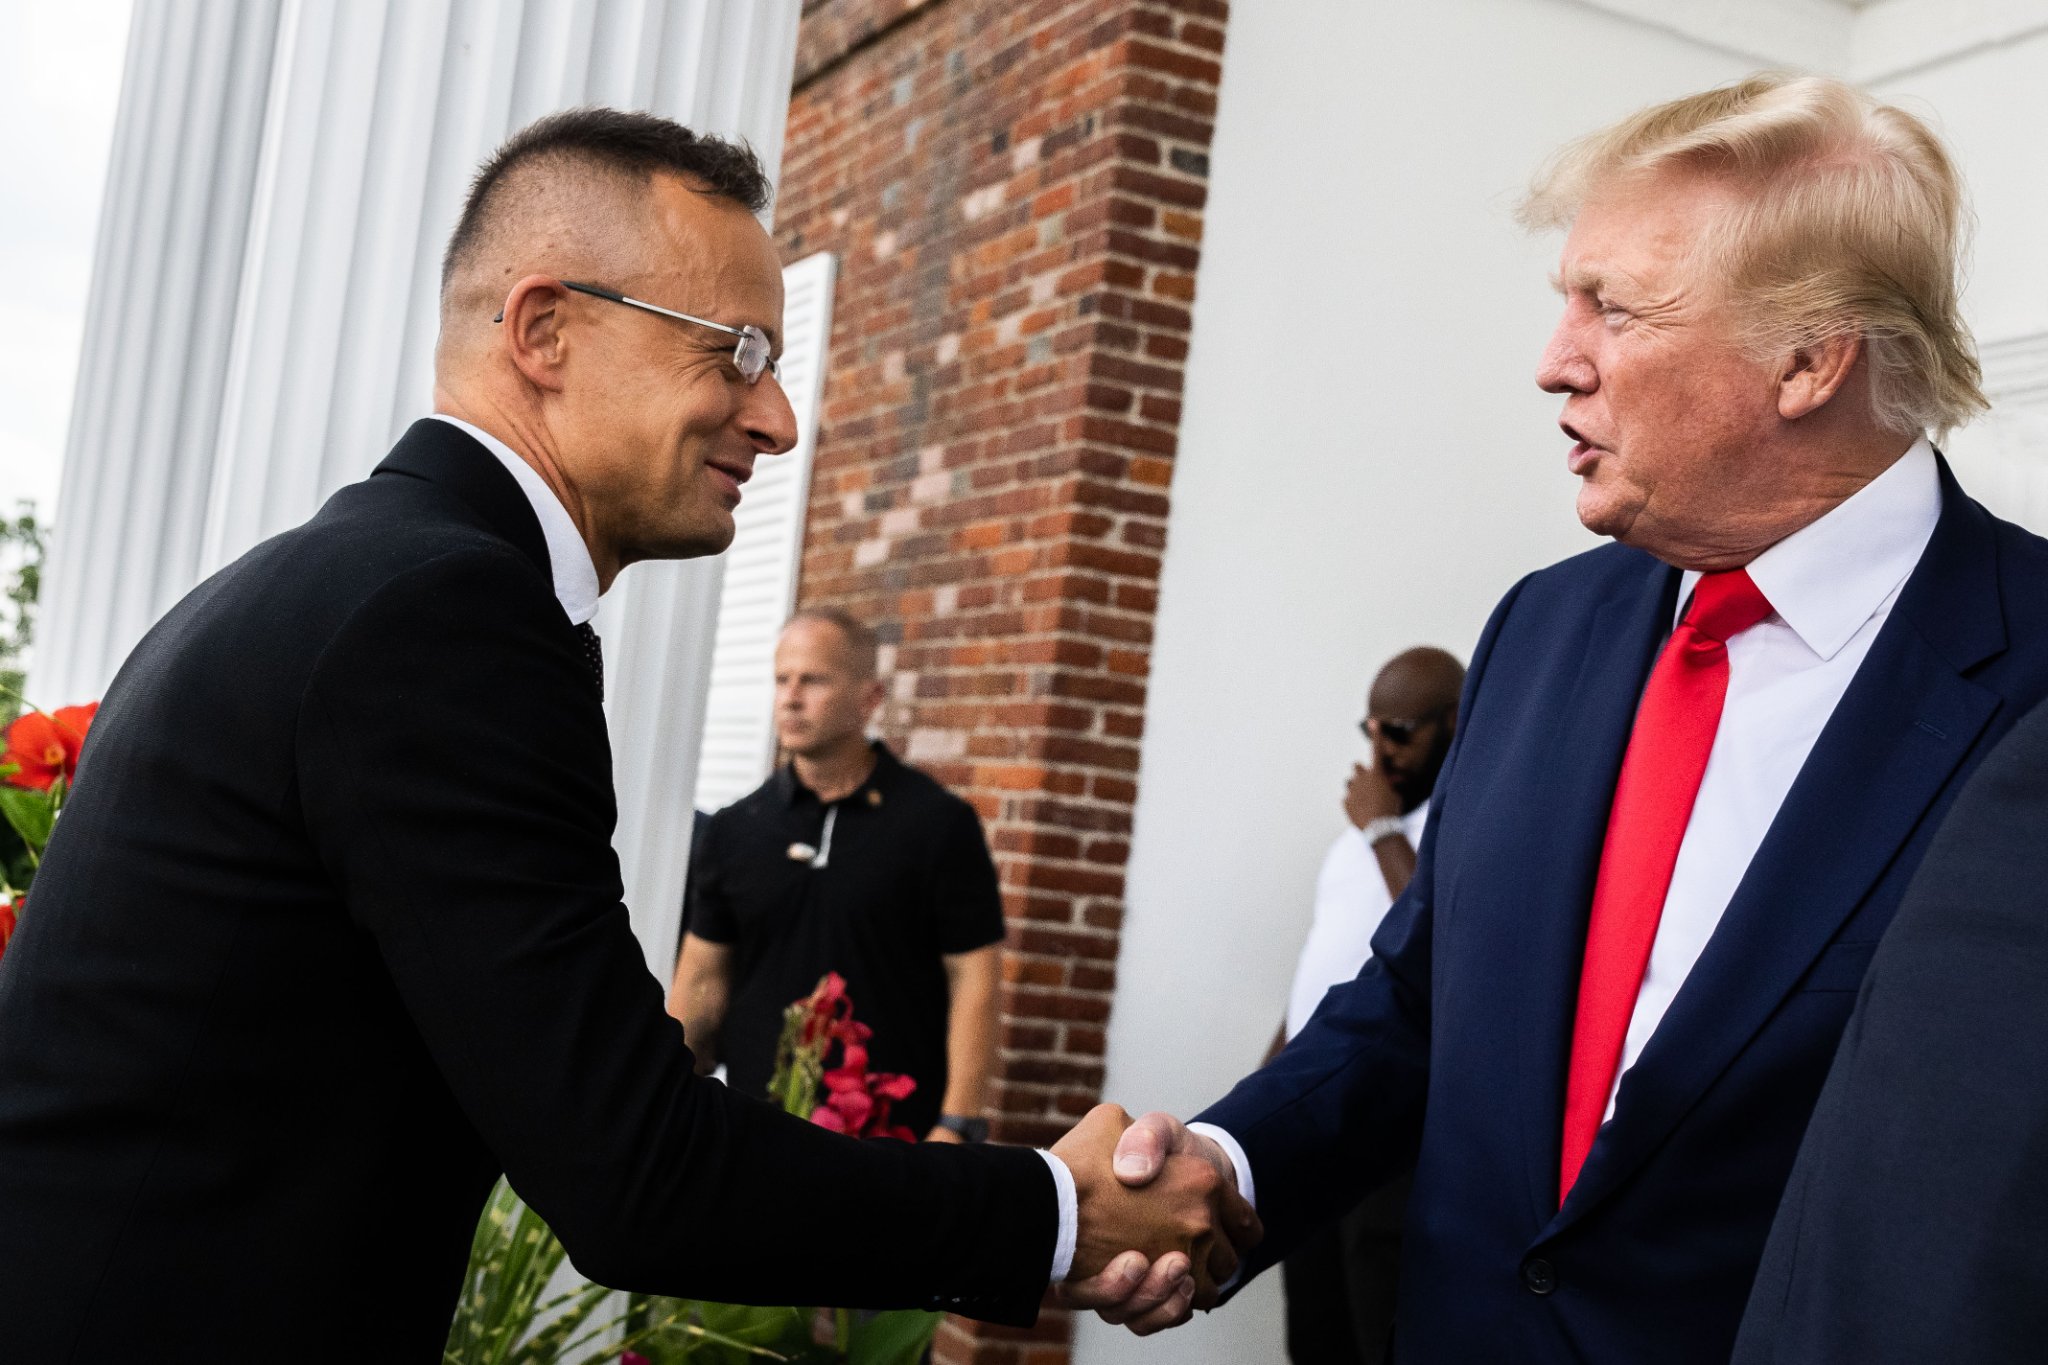 Der Schlüssel zu guten amerikanisch-ungarischen Beziehungen sei die Wahl Trumps, so der Außenminister